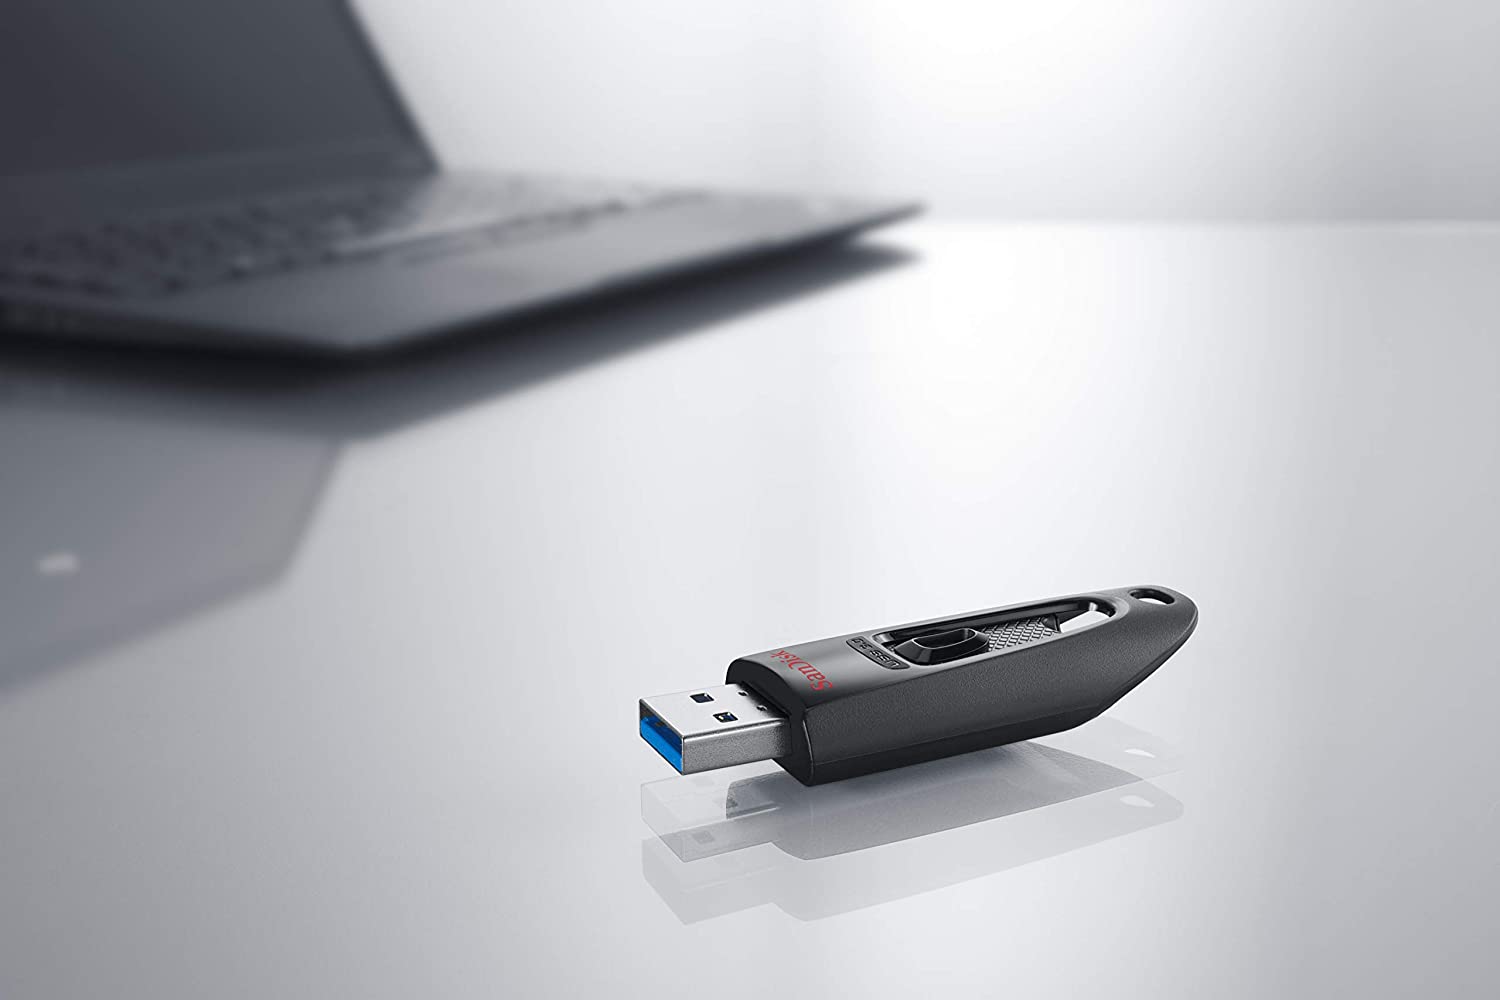 Stylový USB flashdisk SanDisk Cruzer Ultra o kapacitě 256 GB nabízí snadný a bezpečný způsob sdílení, přesunu a zálohování vašich nejdůležitějších souborů.